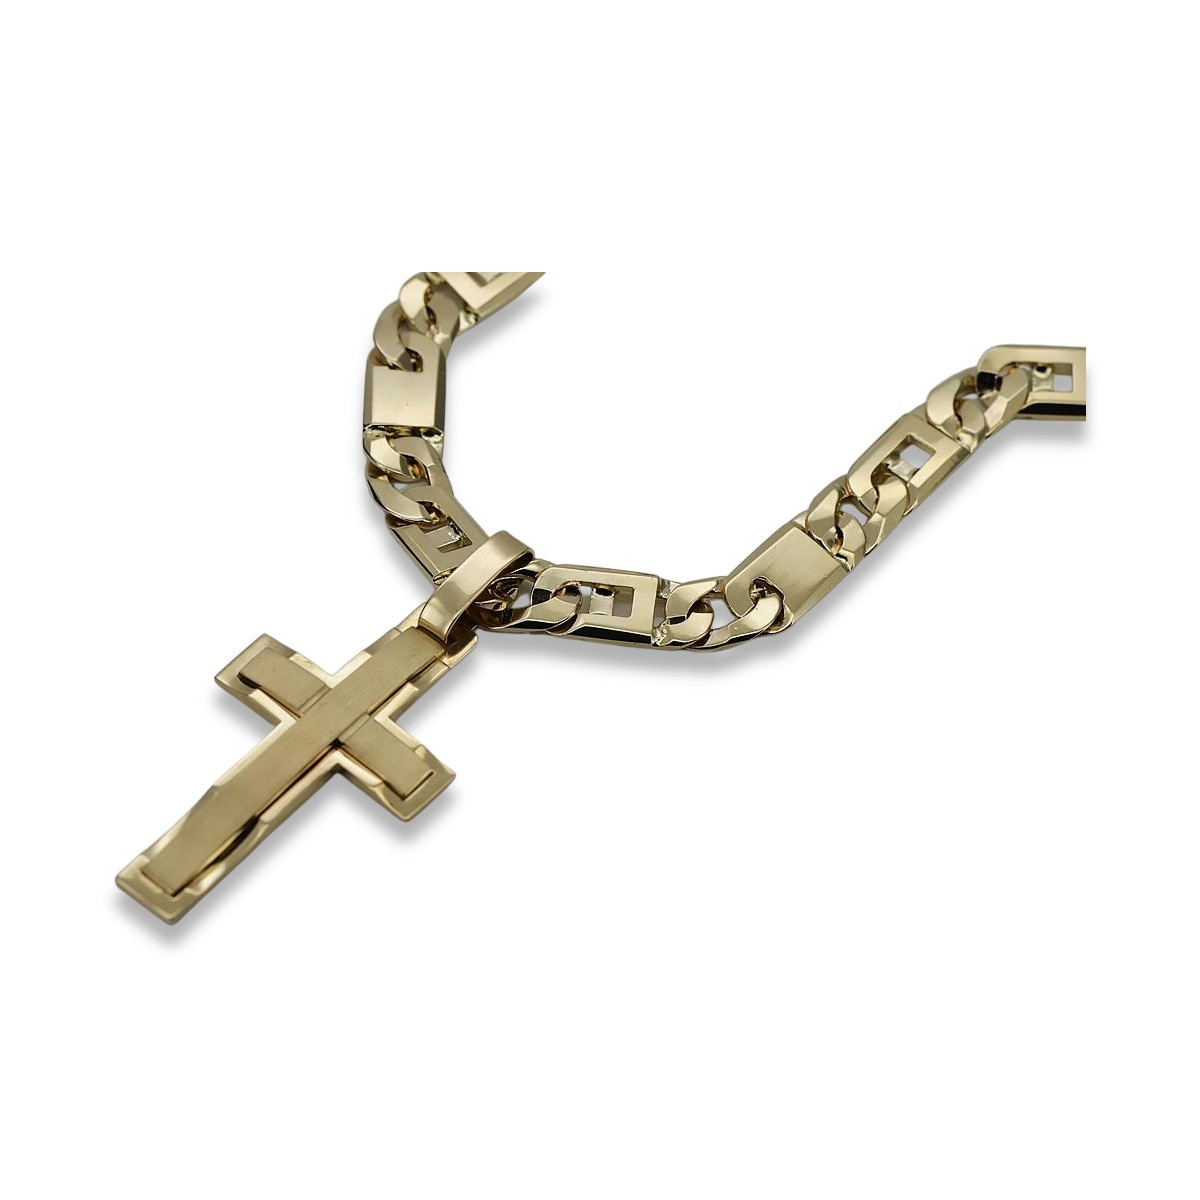 copy of Croix catholique en or jaune 14 carats avec chaîne élégante ctc096y&cc099y